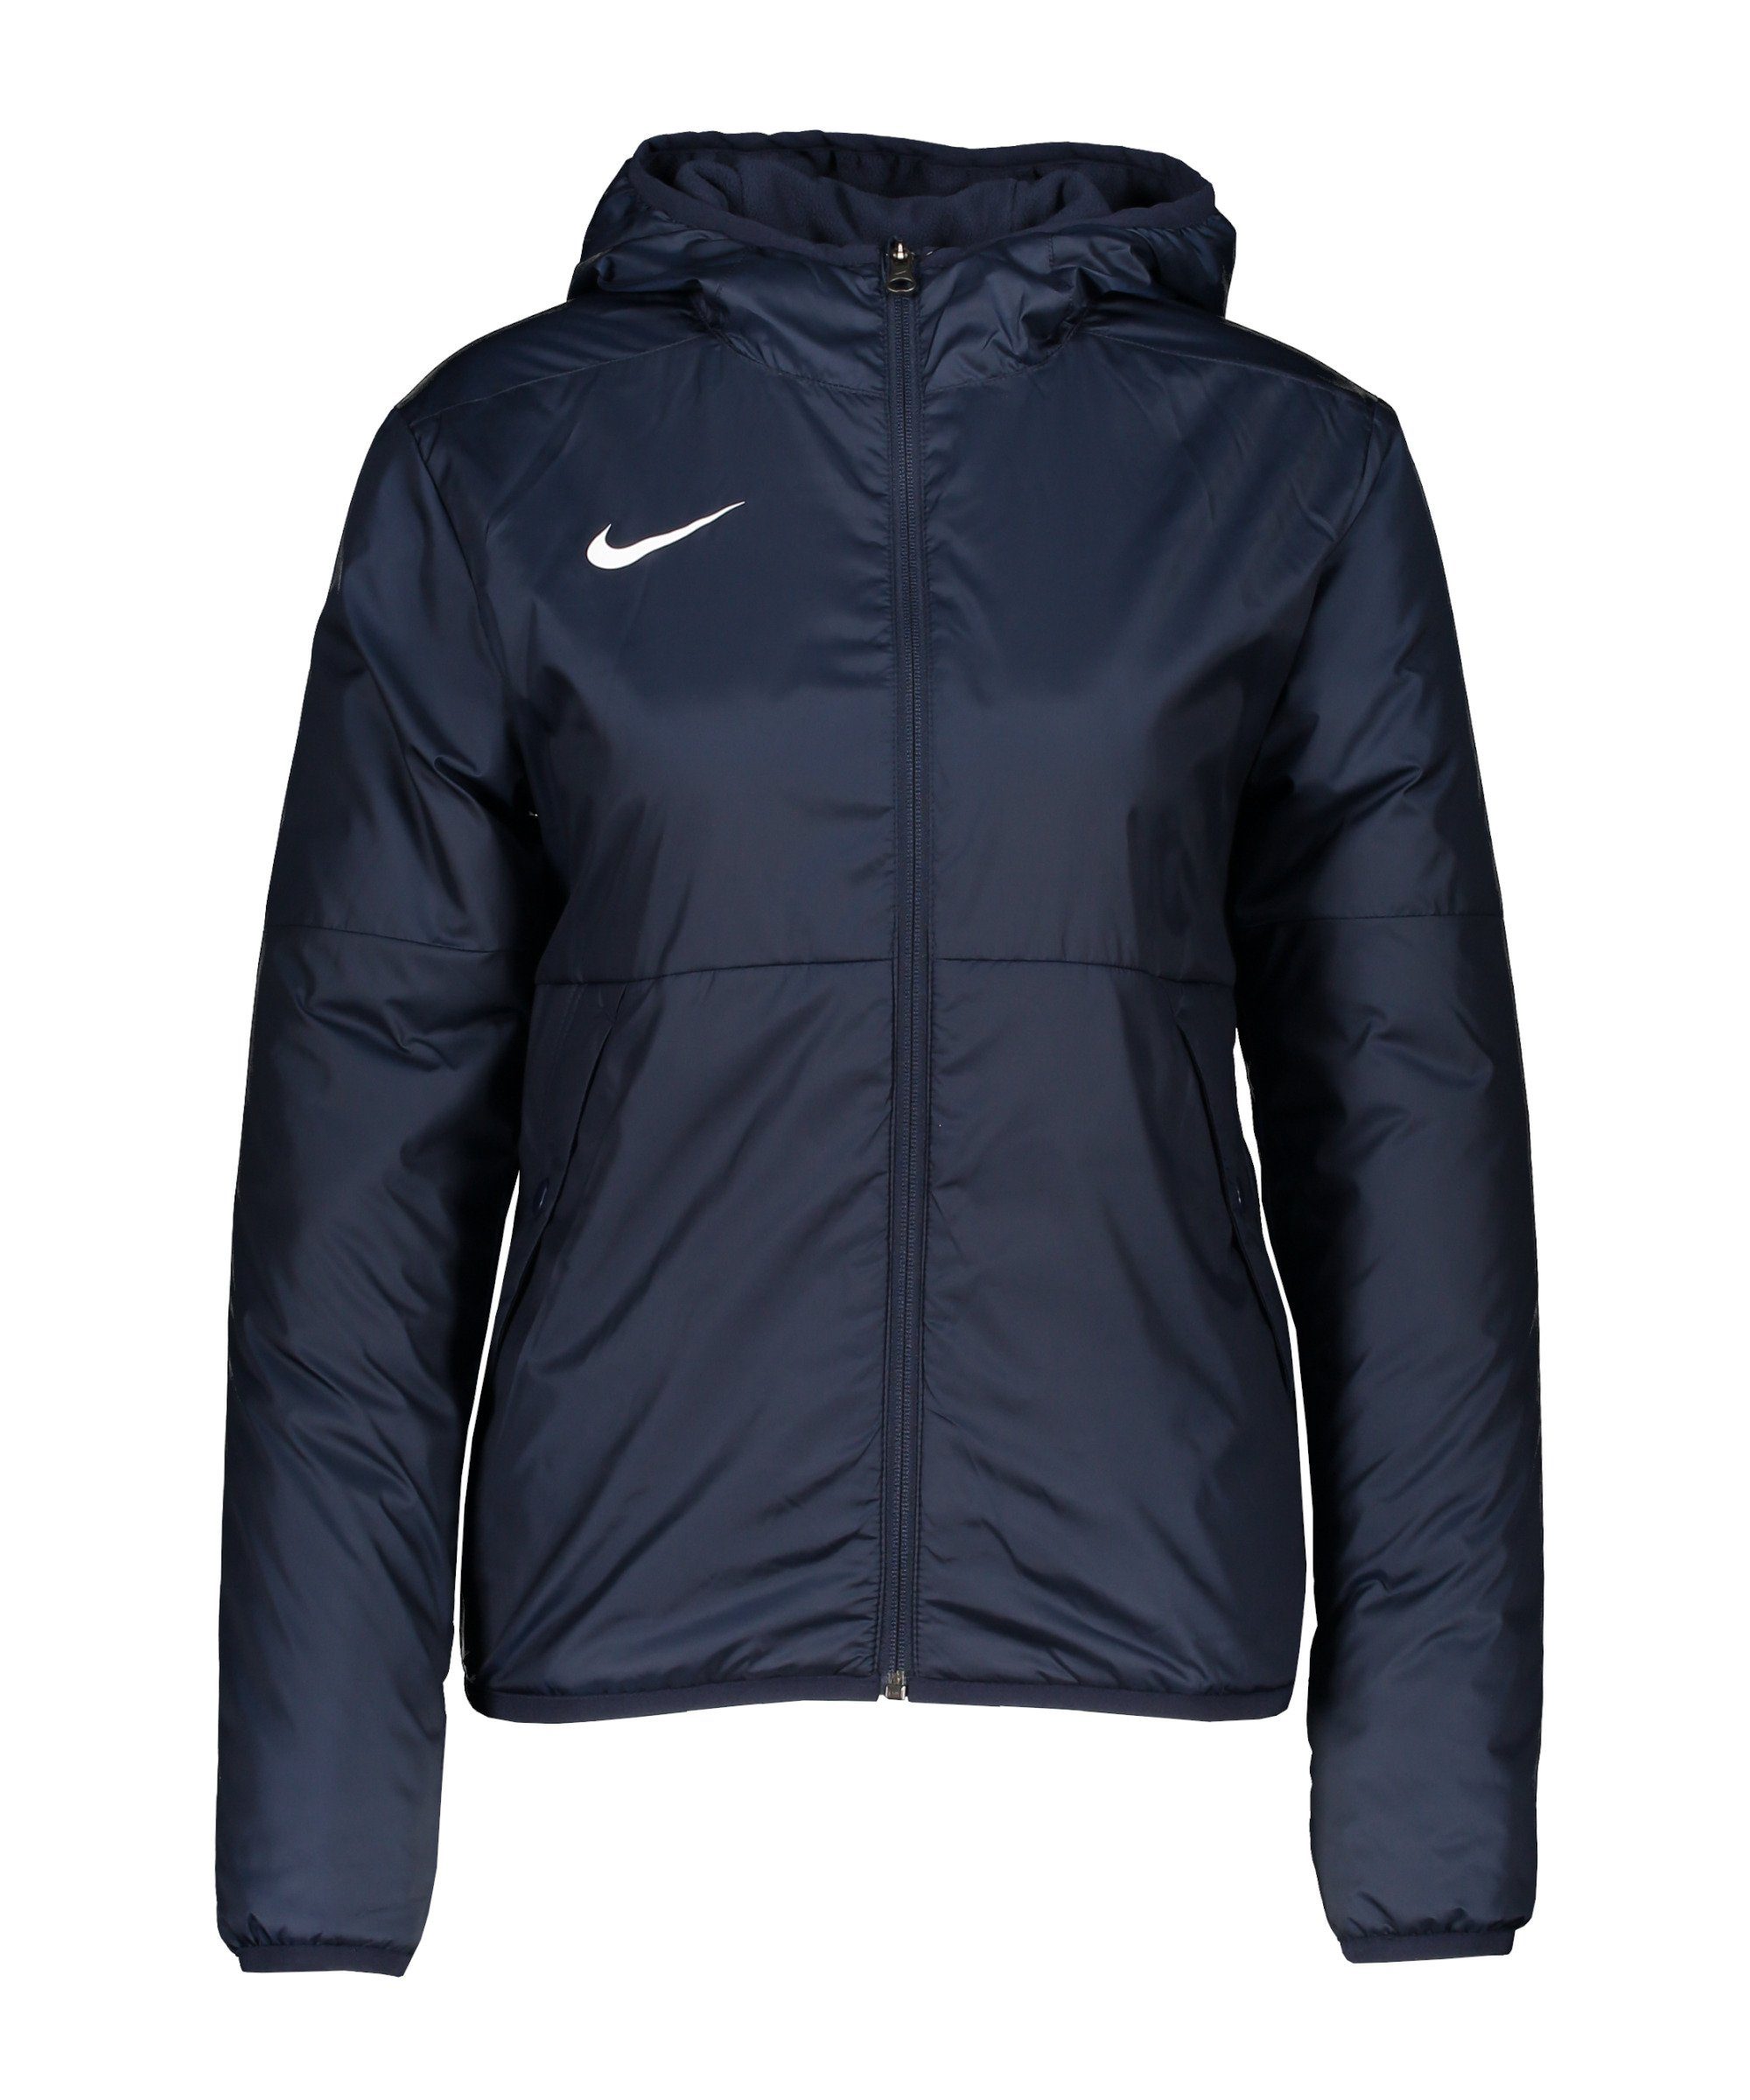 Regenjacke Damen Trainingsjacke Nike Repel 20 Park blauweiss